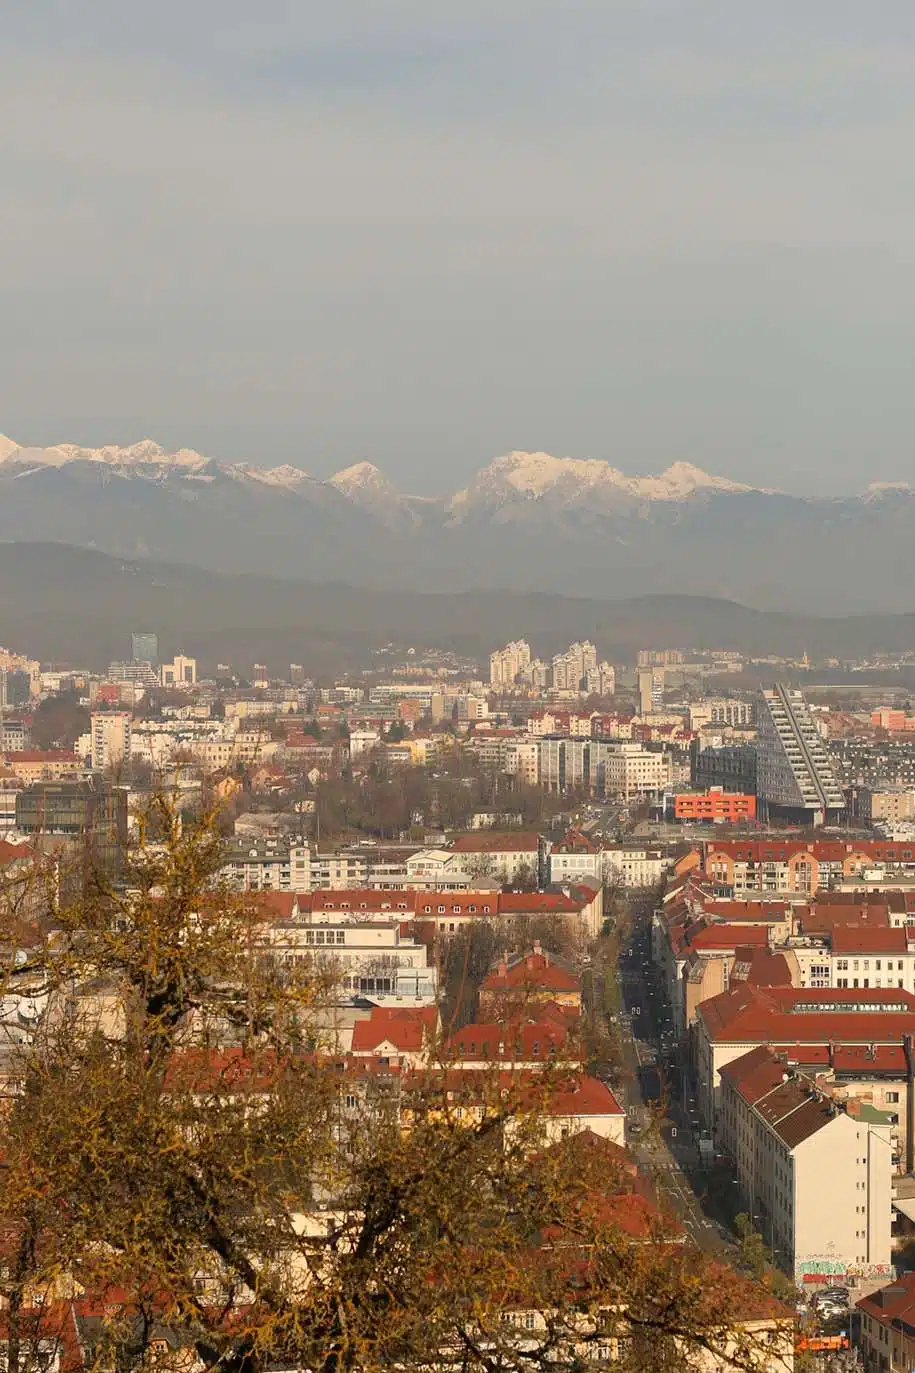 centro histórico de liubliana, na eslovênia, com montanhas nevadas no fundo